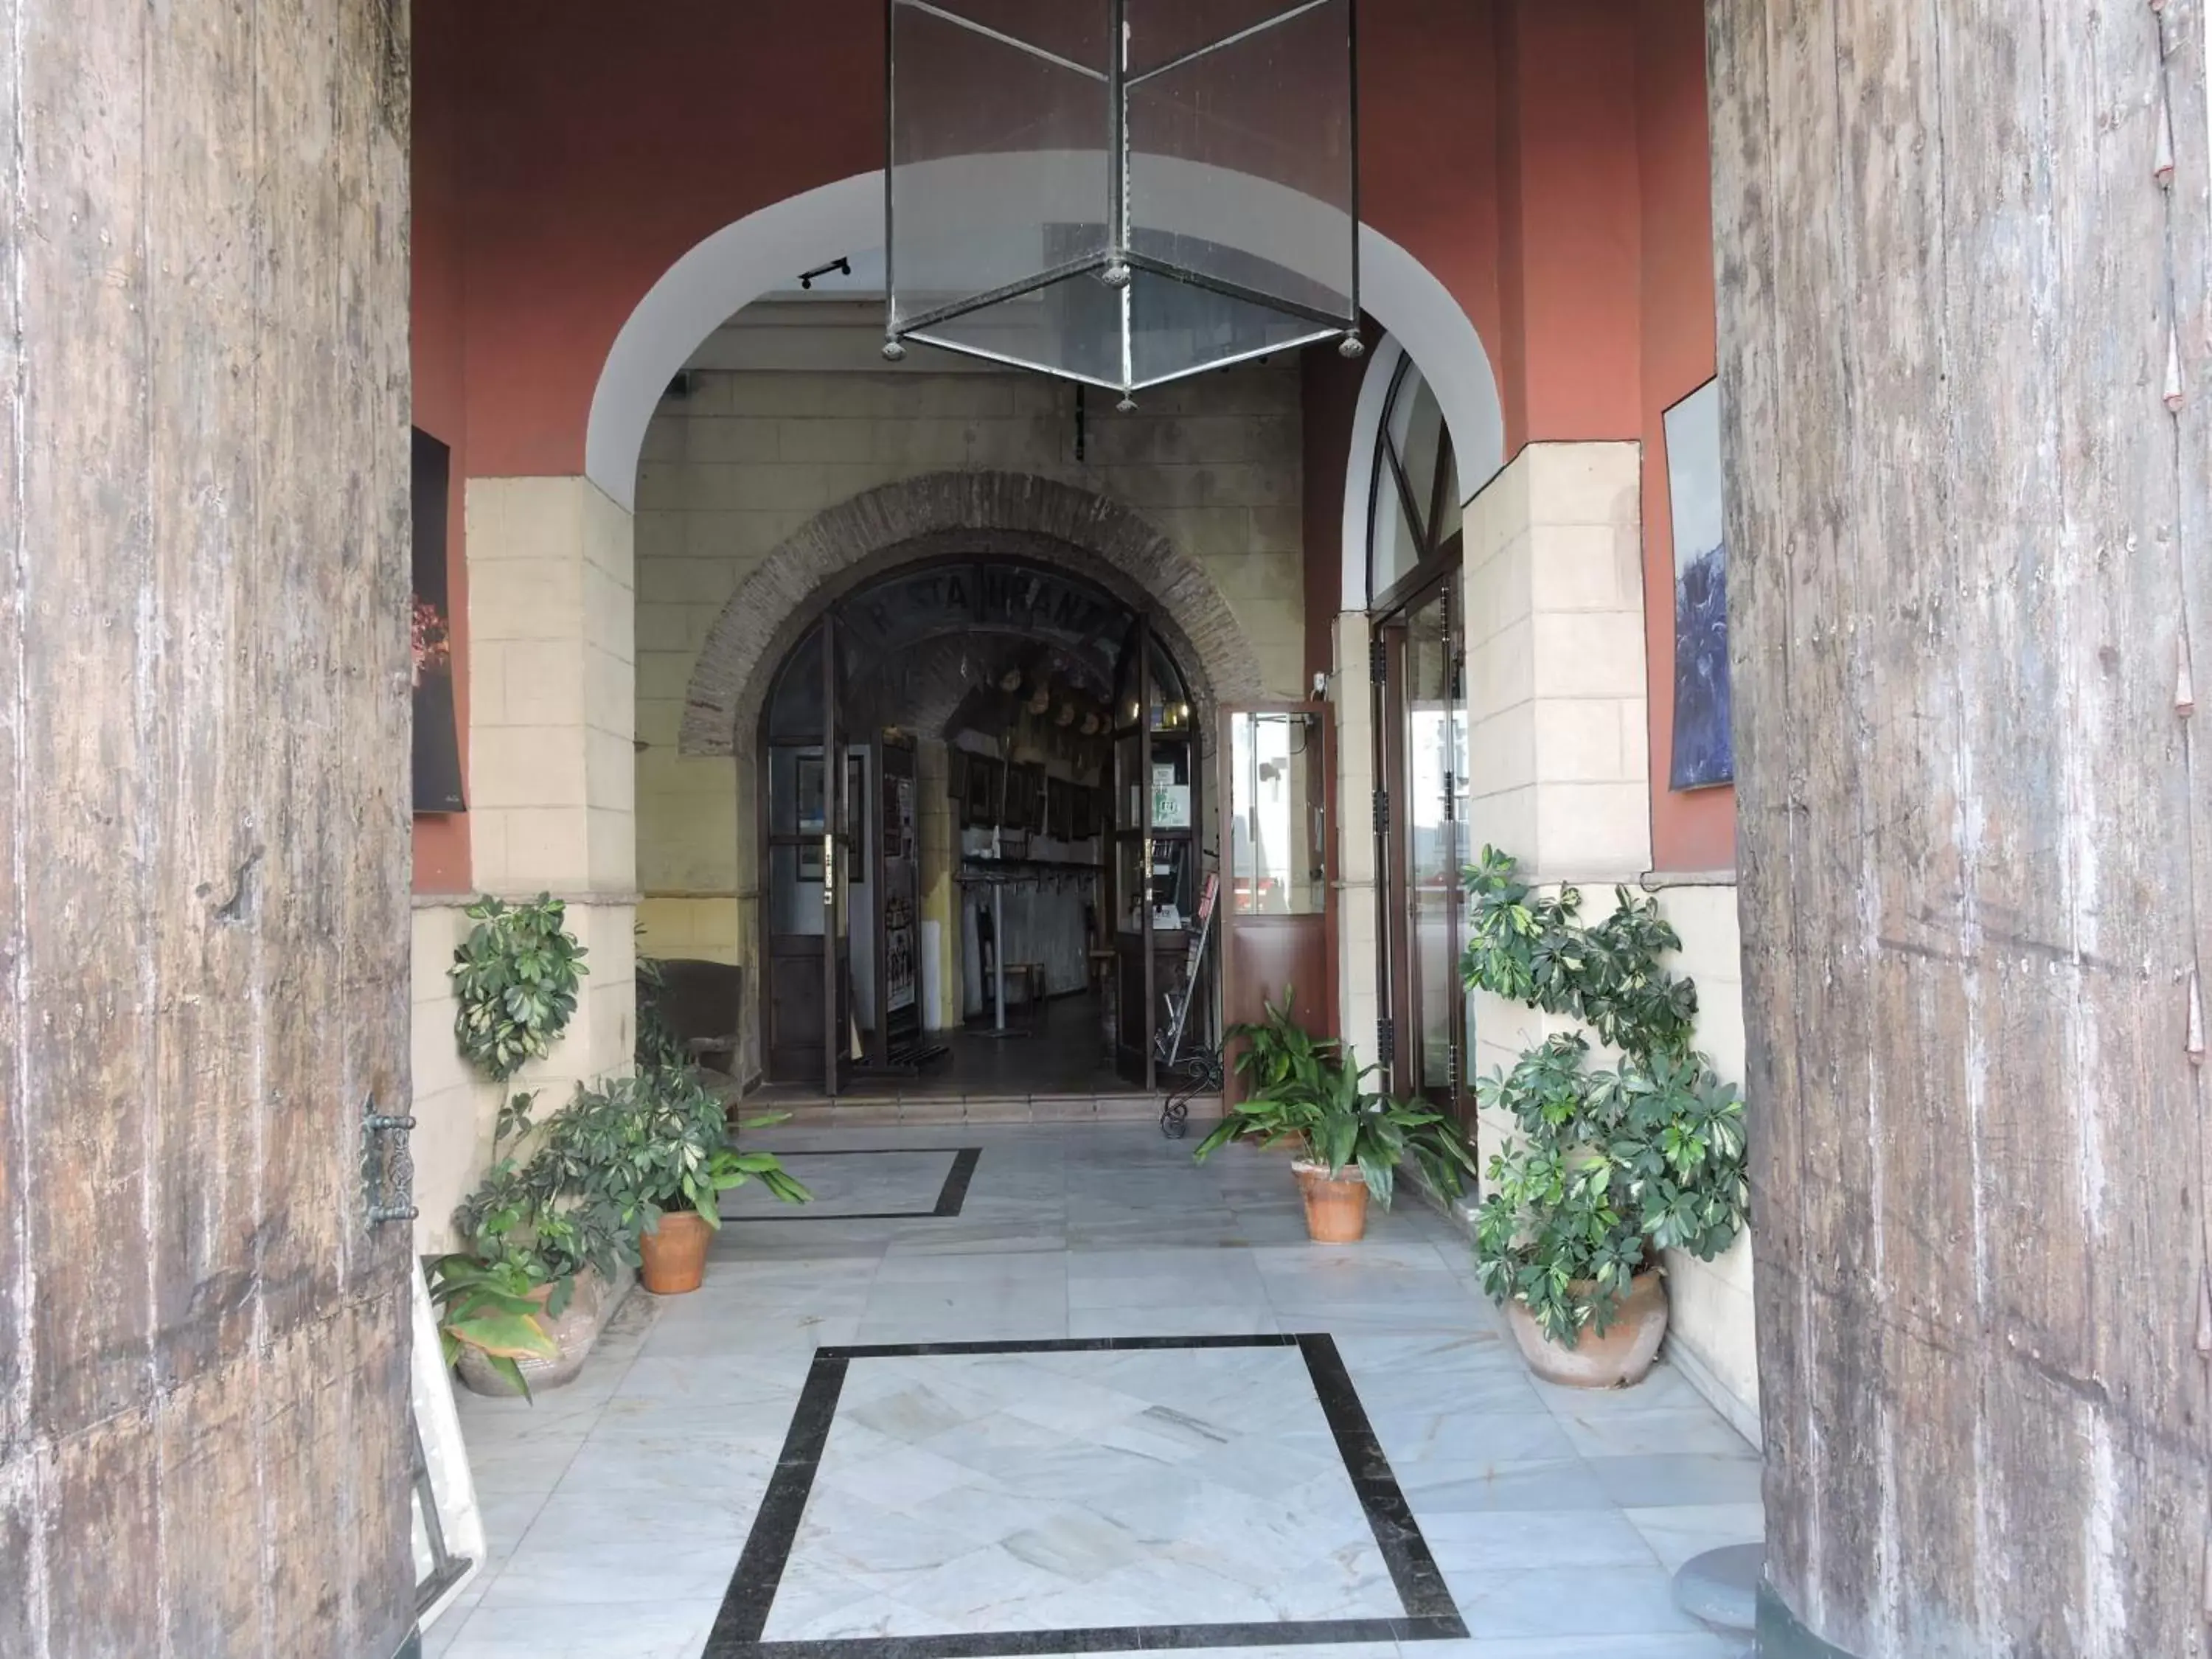 Lobby or reception in Hotel La Fonda del Califa